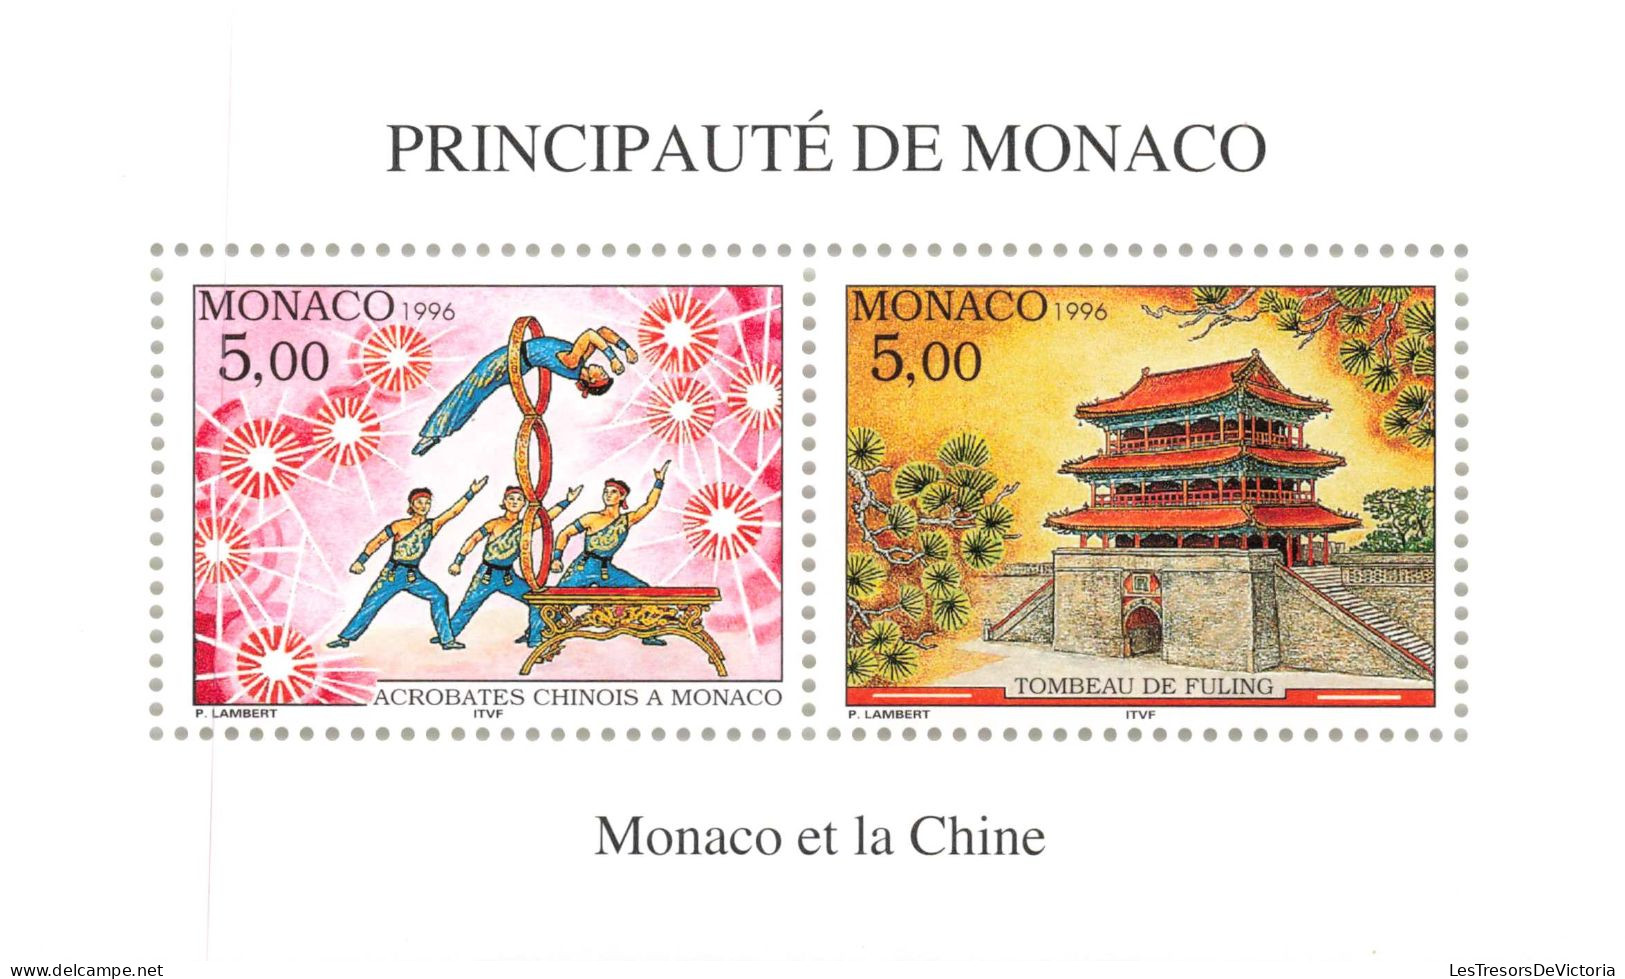 Monaco - Blocs MNH * - 1996 - Principauté De Monaco - Monaco Et Le Chine - Bloques